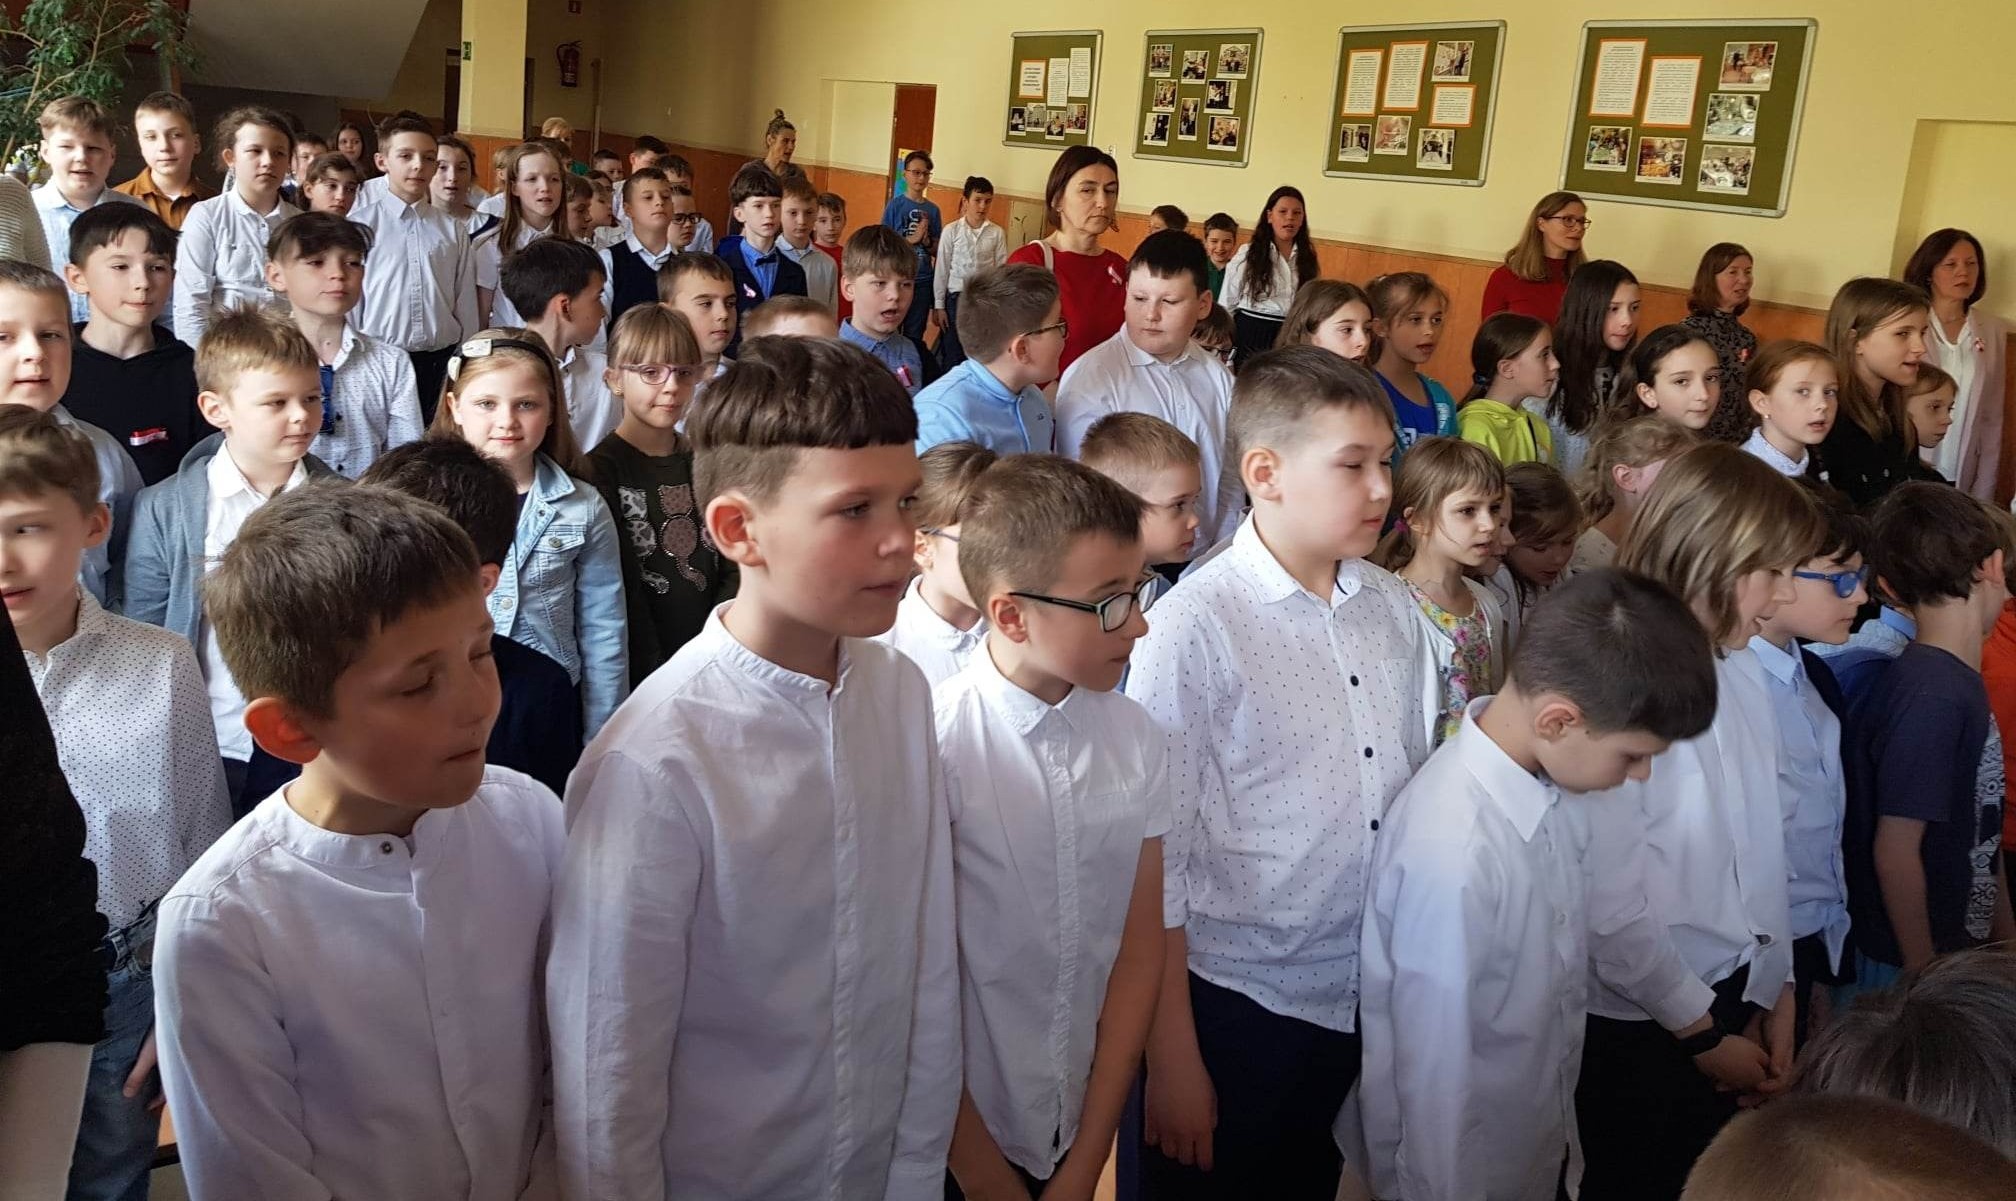 uczniowie podczas hymnu na akademii szkolnej